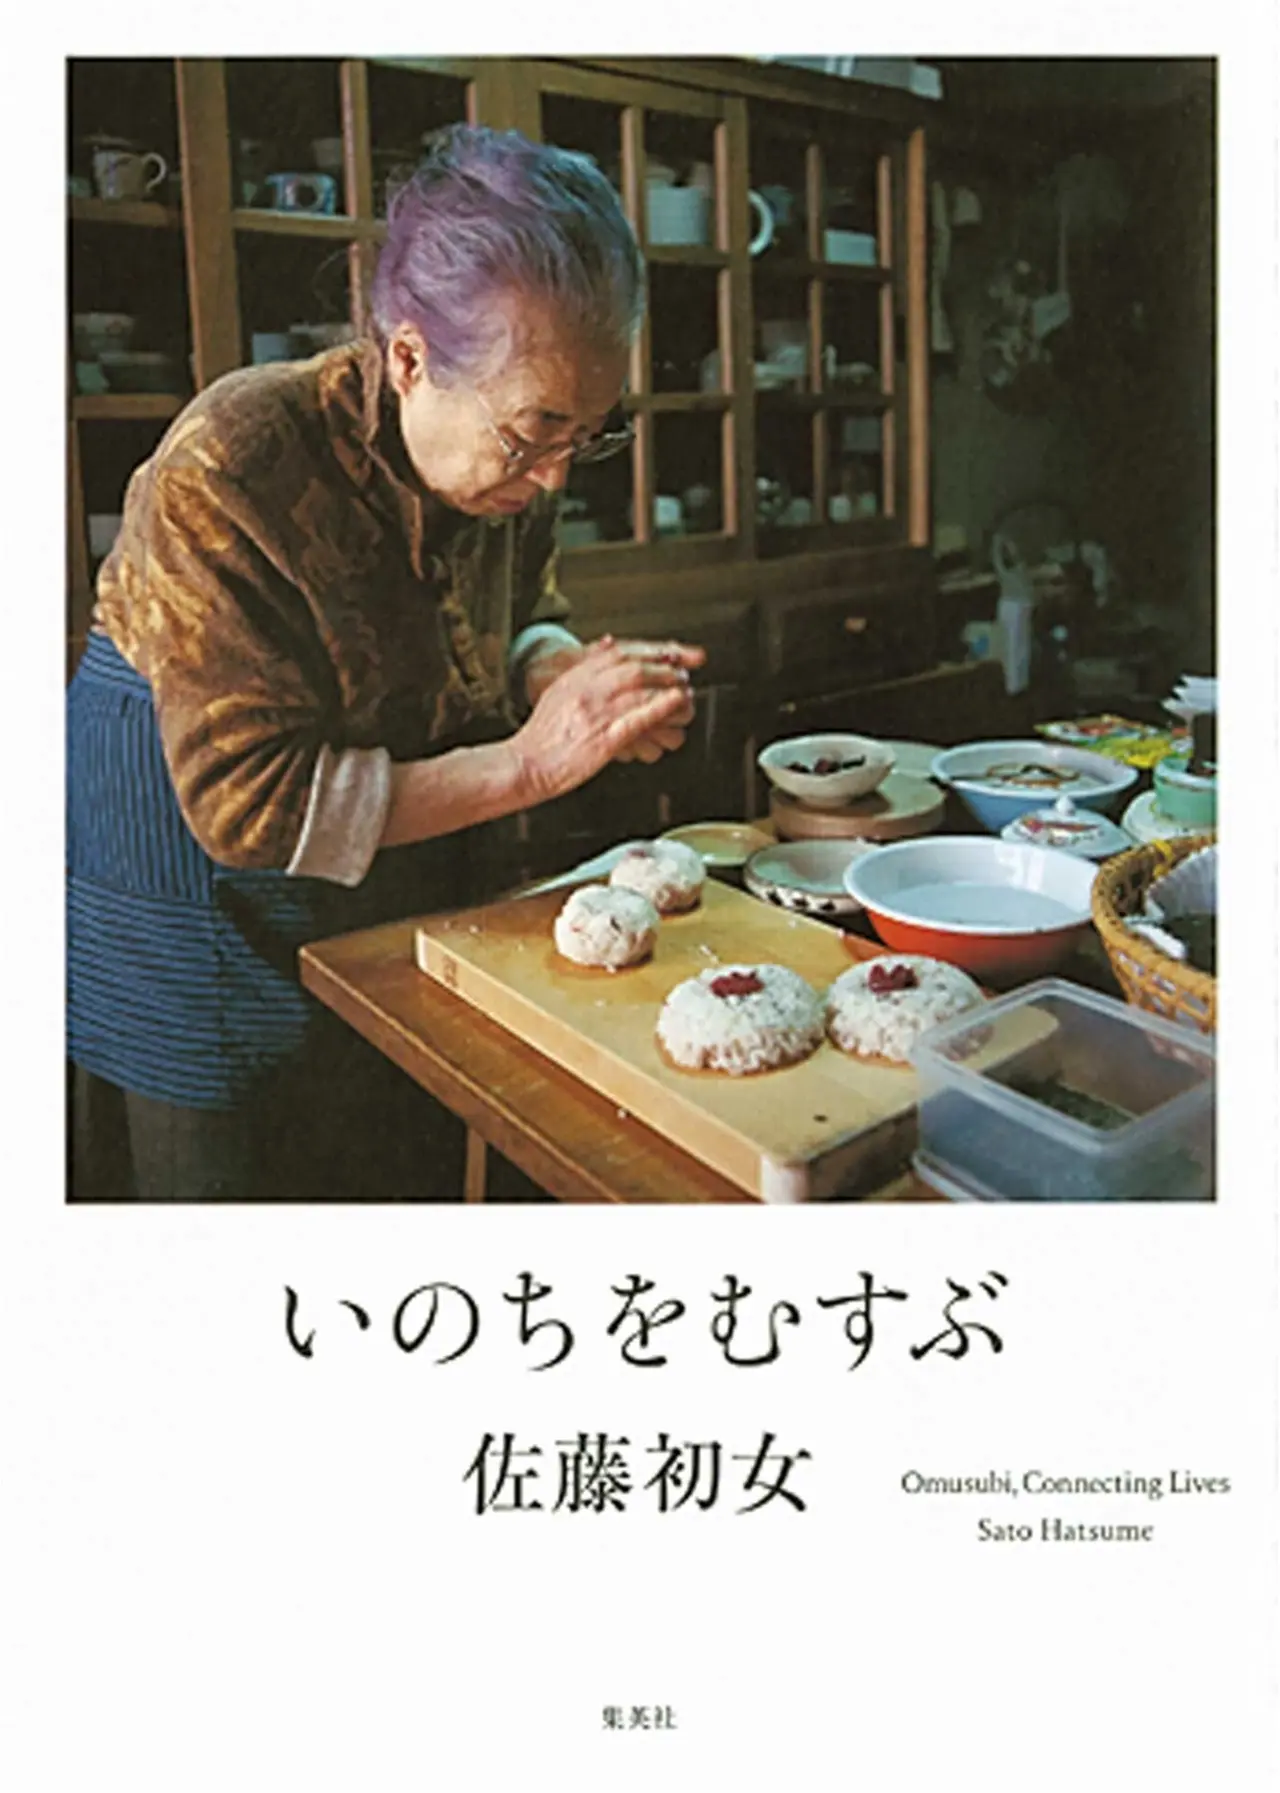 94歳で天に召された佐藤初女さんのメッセージ いのちをむすぶ など今月のオススメ Book ライフスタイル最新情報 Daily More